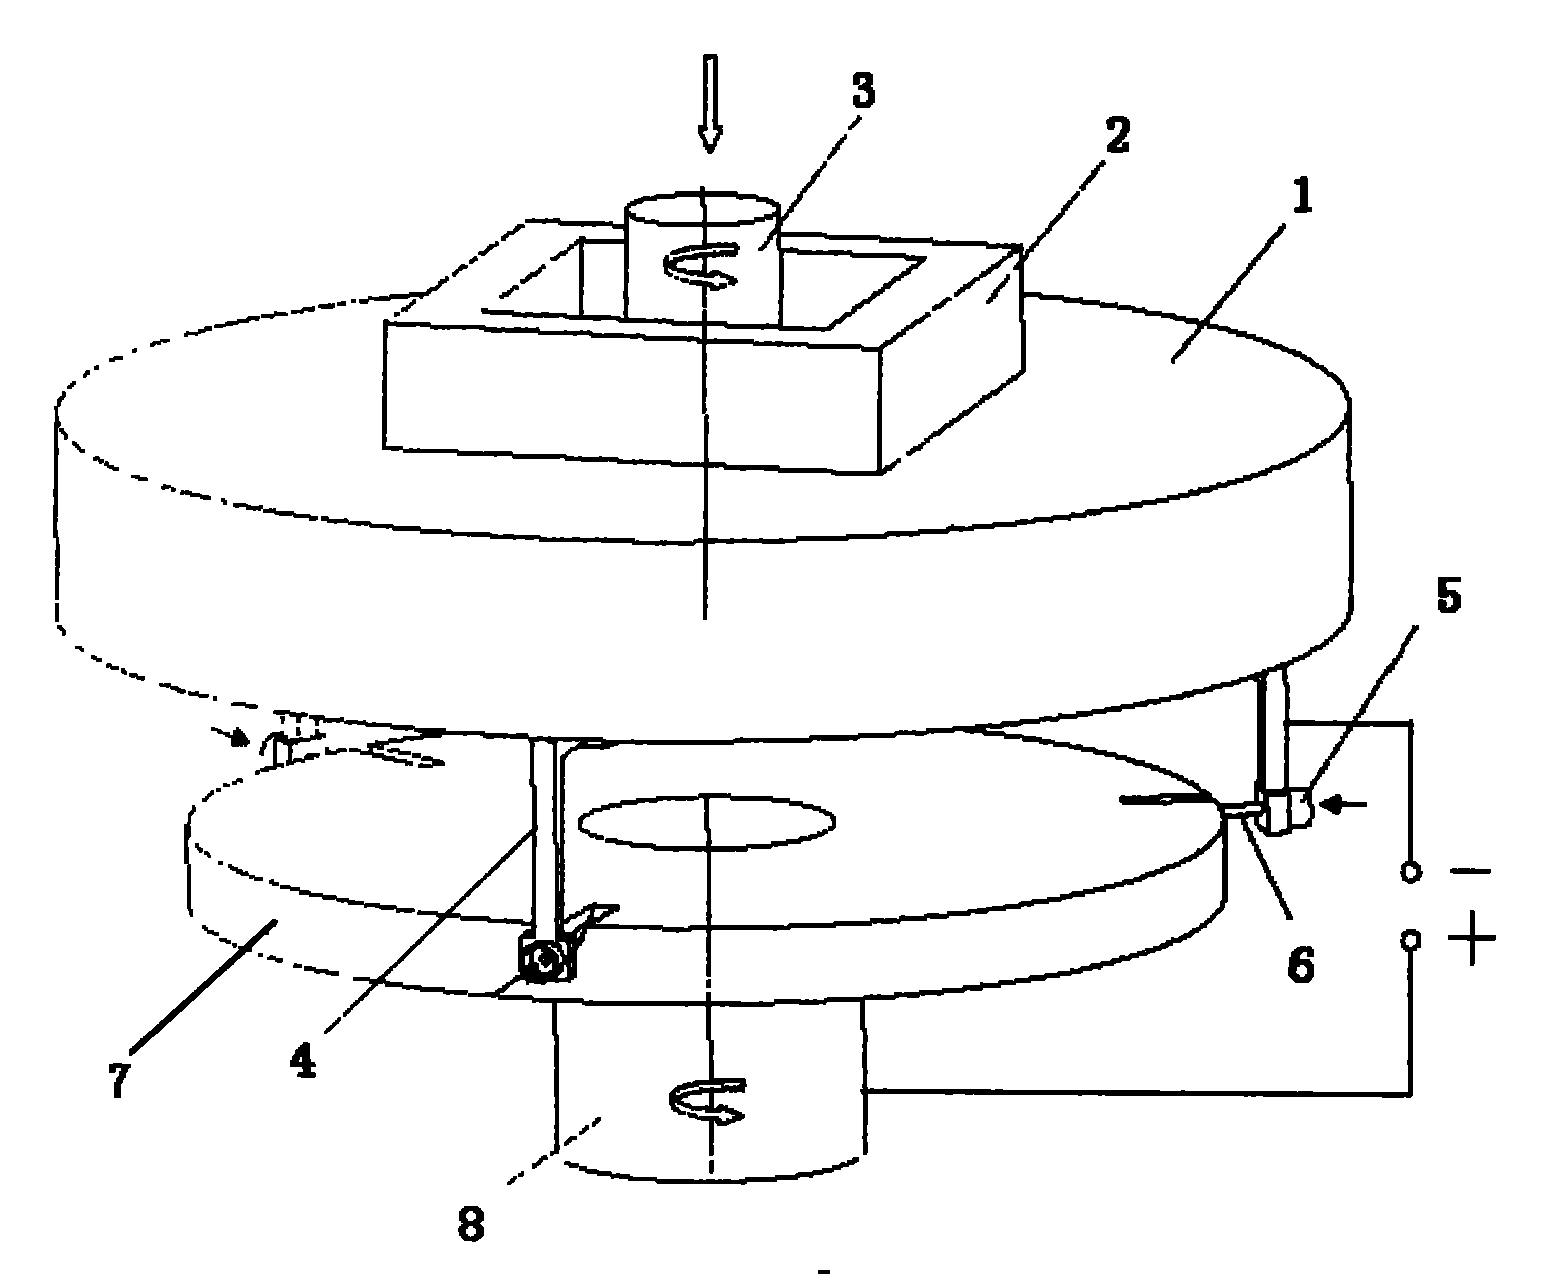 Multi-electrode spiral feeding integral blade wheel inter-blade passage electrolytic machining method